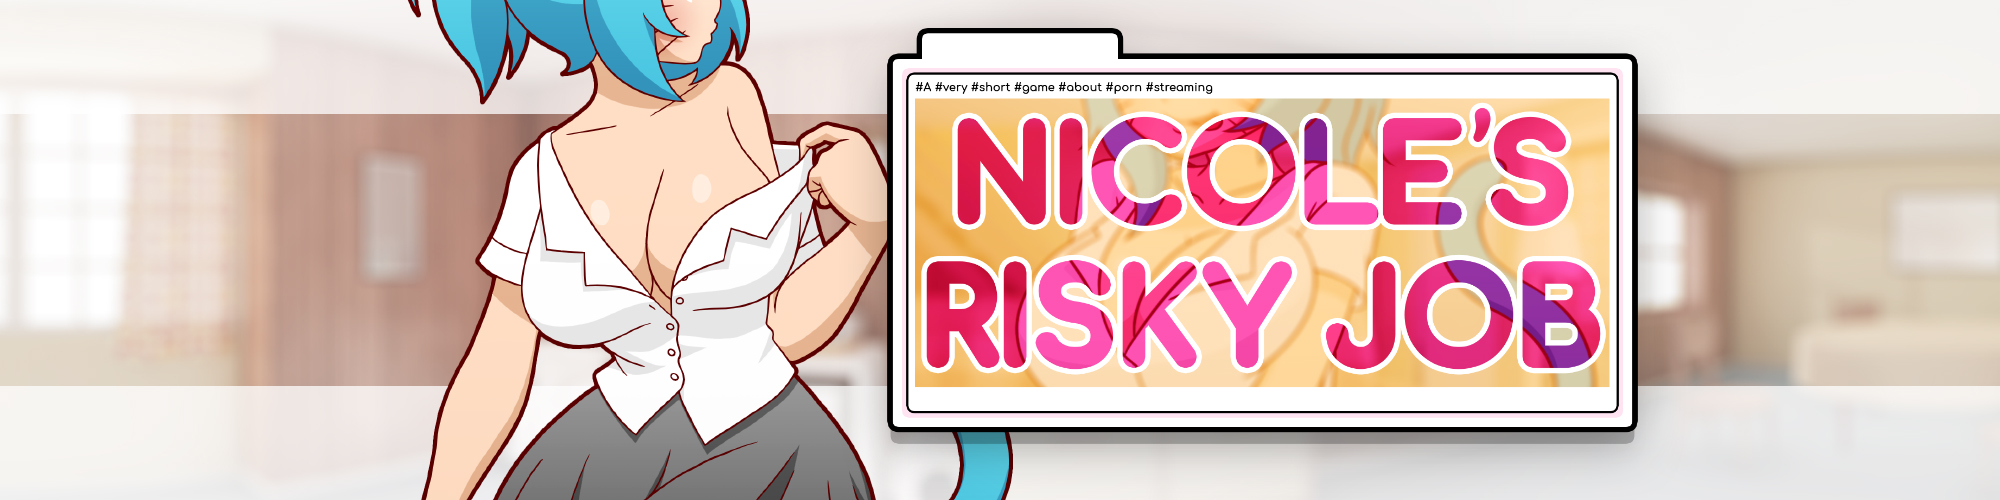 2000px x 500px - Nicole's Risky Job by Manyakis